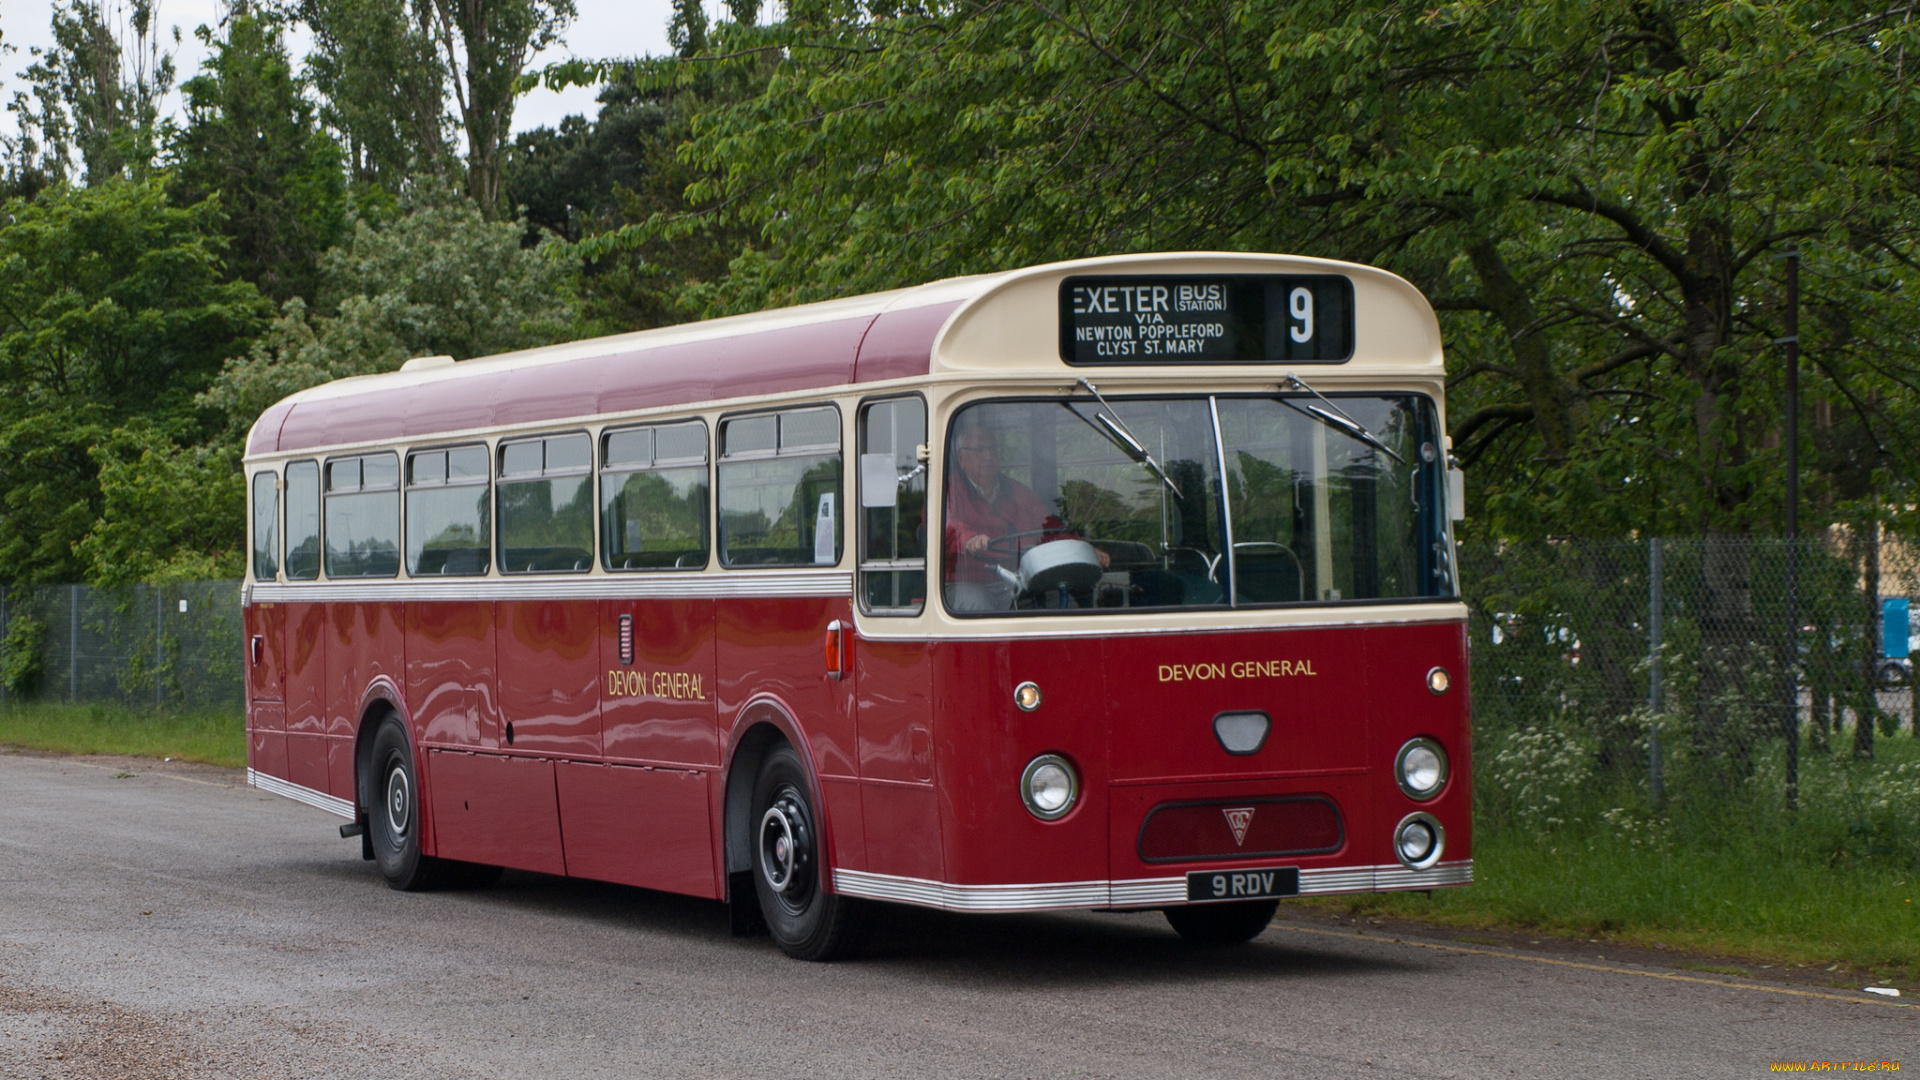 1964, aec, reliancemarshall, devon, general, 9, автомобили, автобусы, общественный, транспорт, автобус